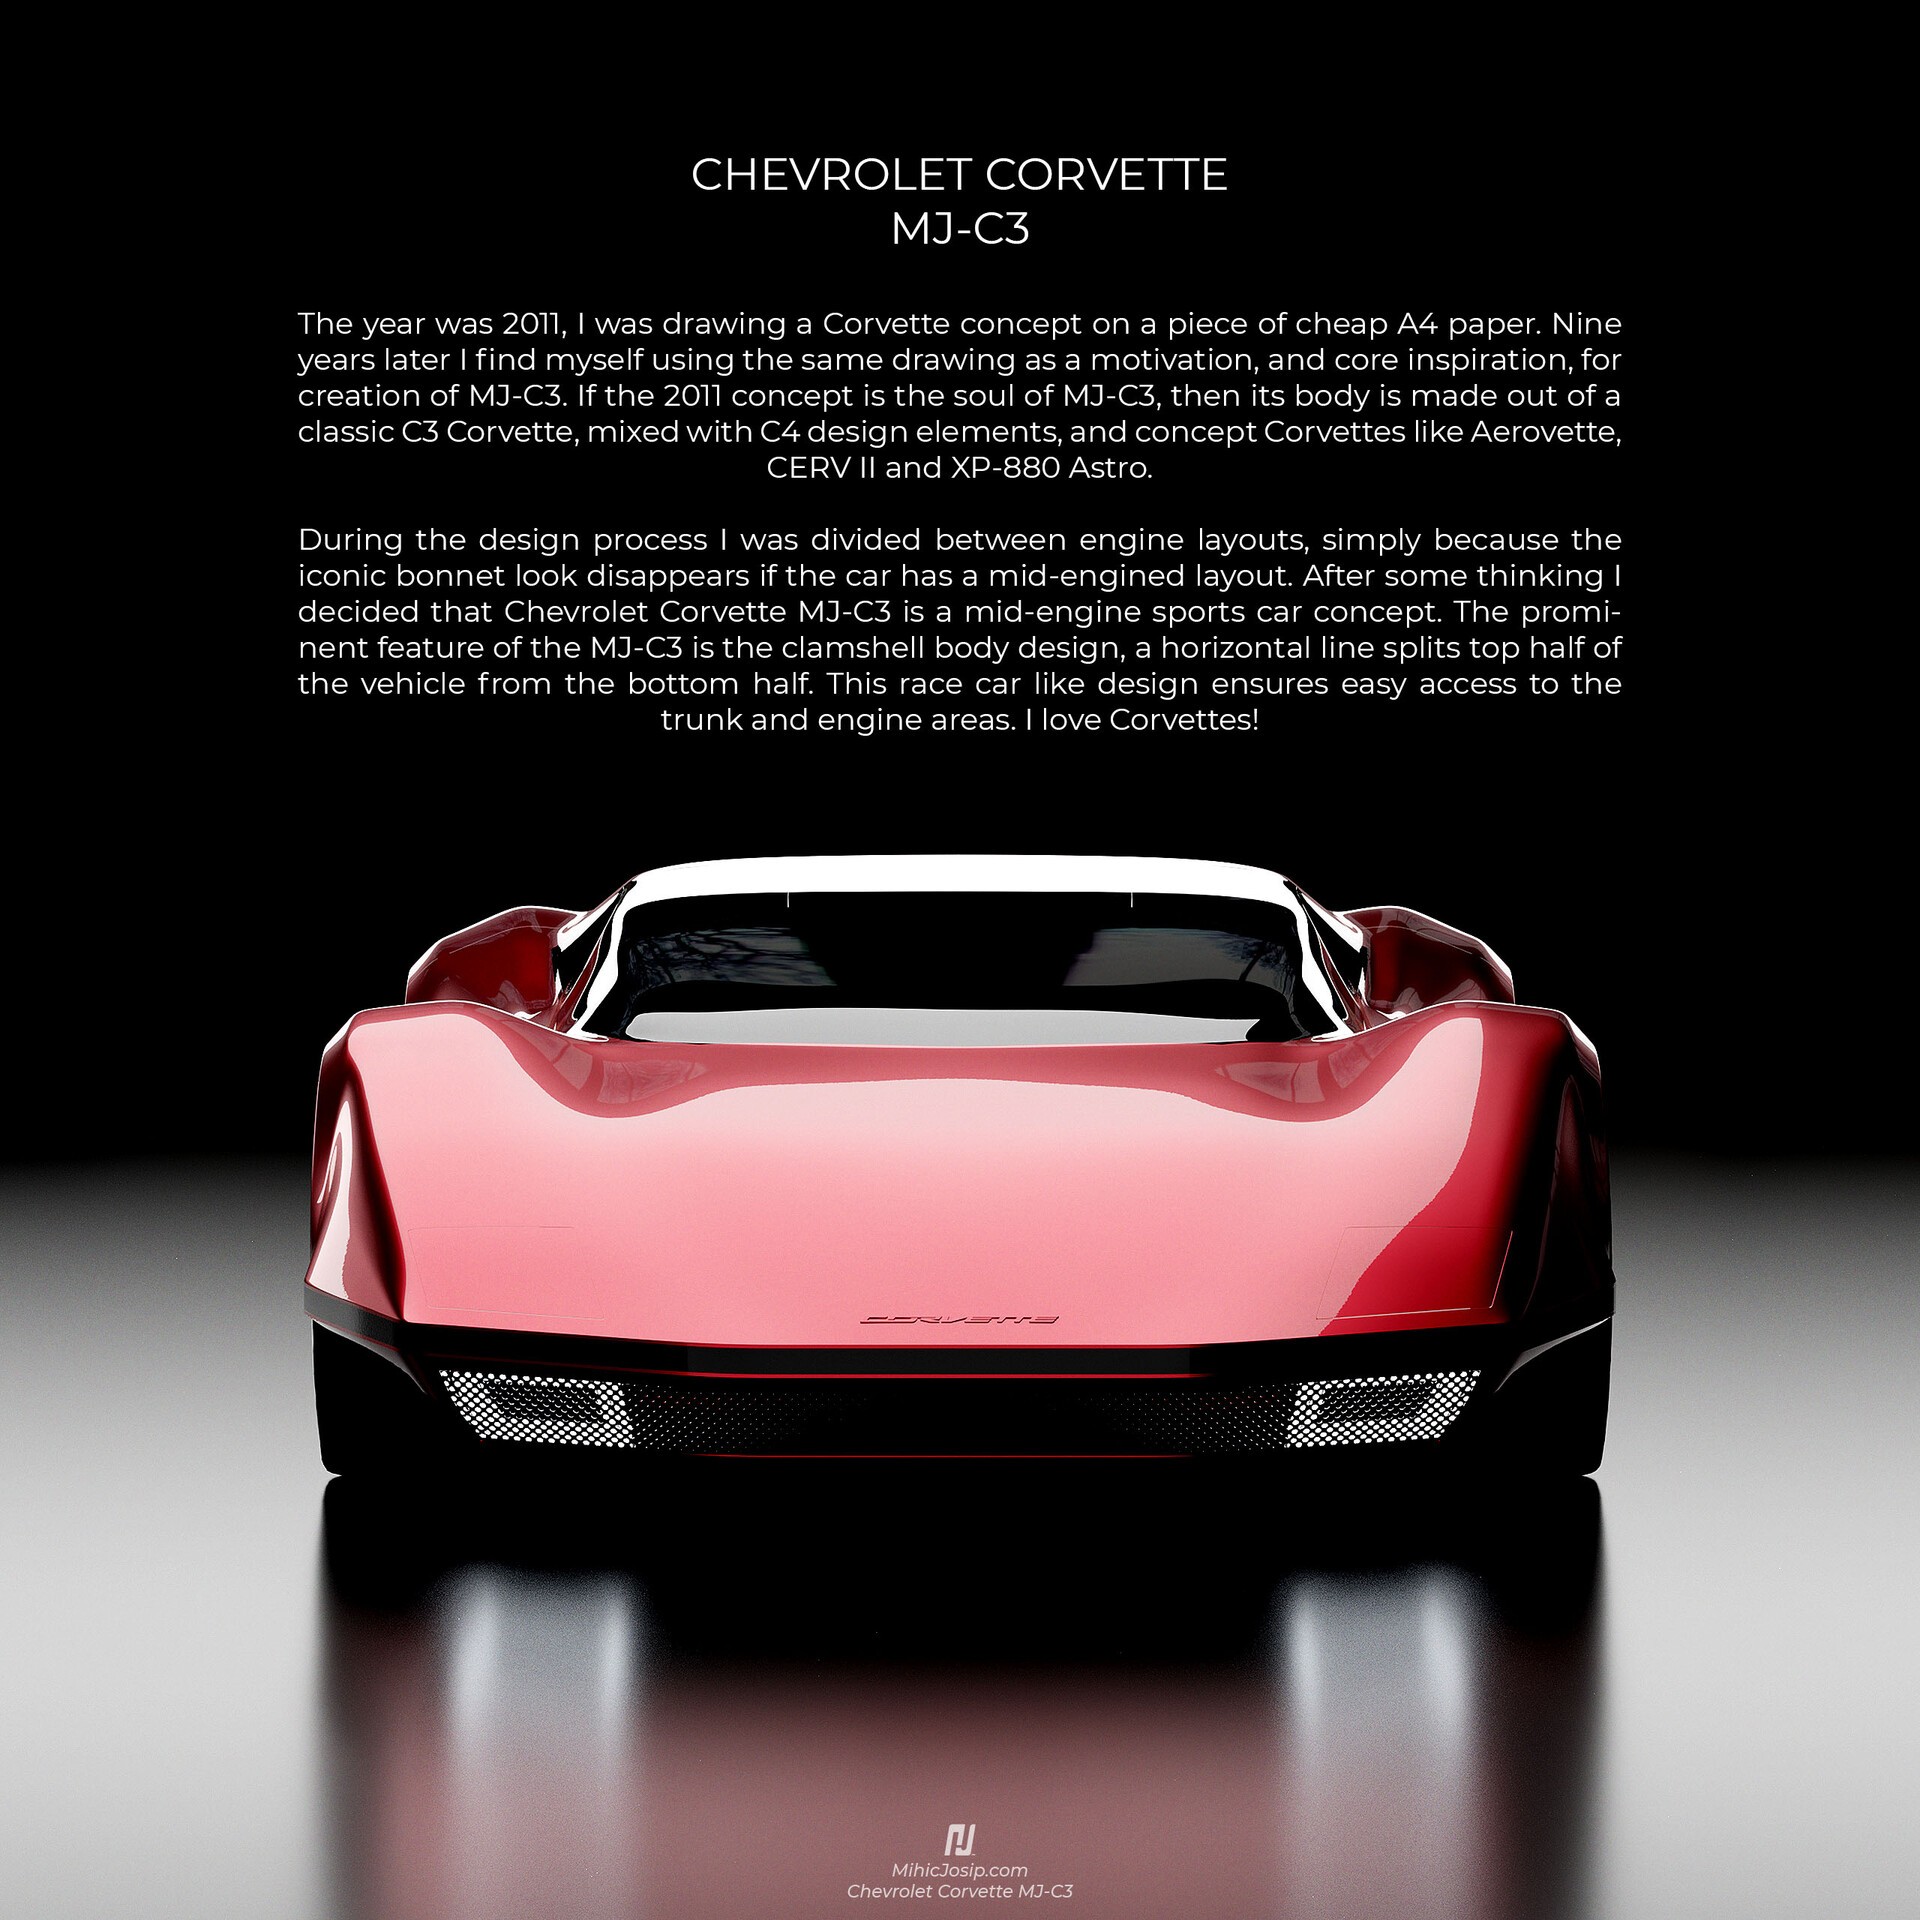 Chevrolet Corvette Cerv Iii Concept Wallpapers